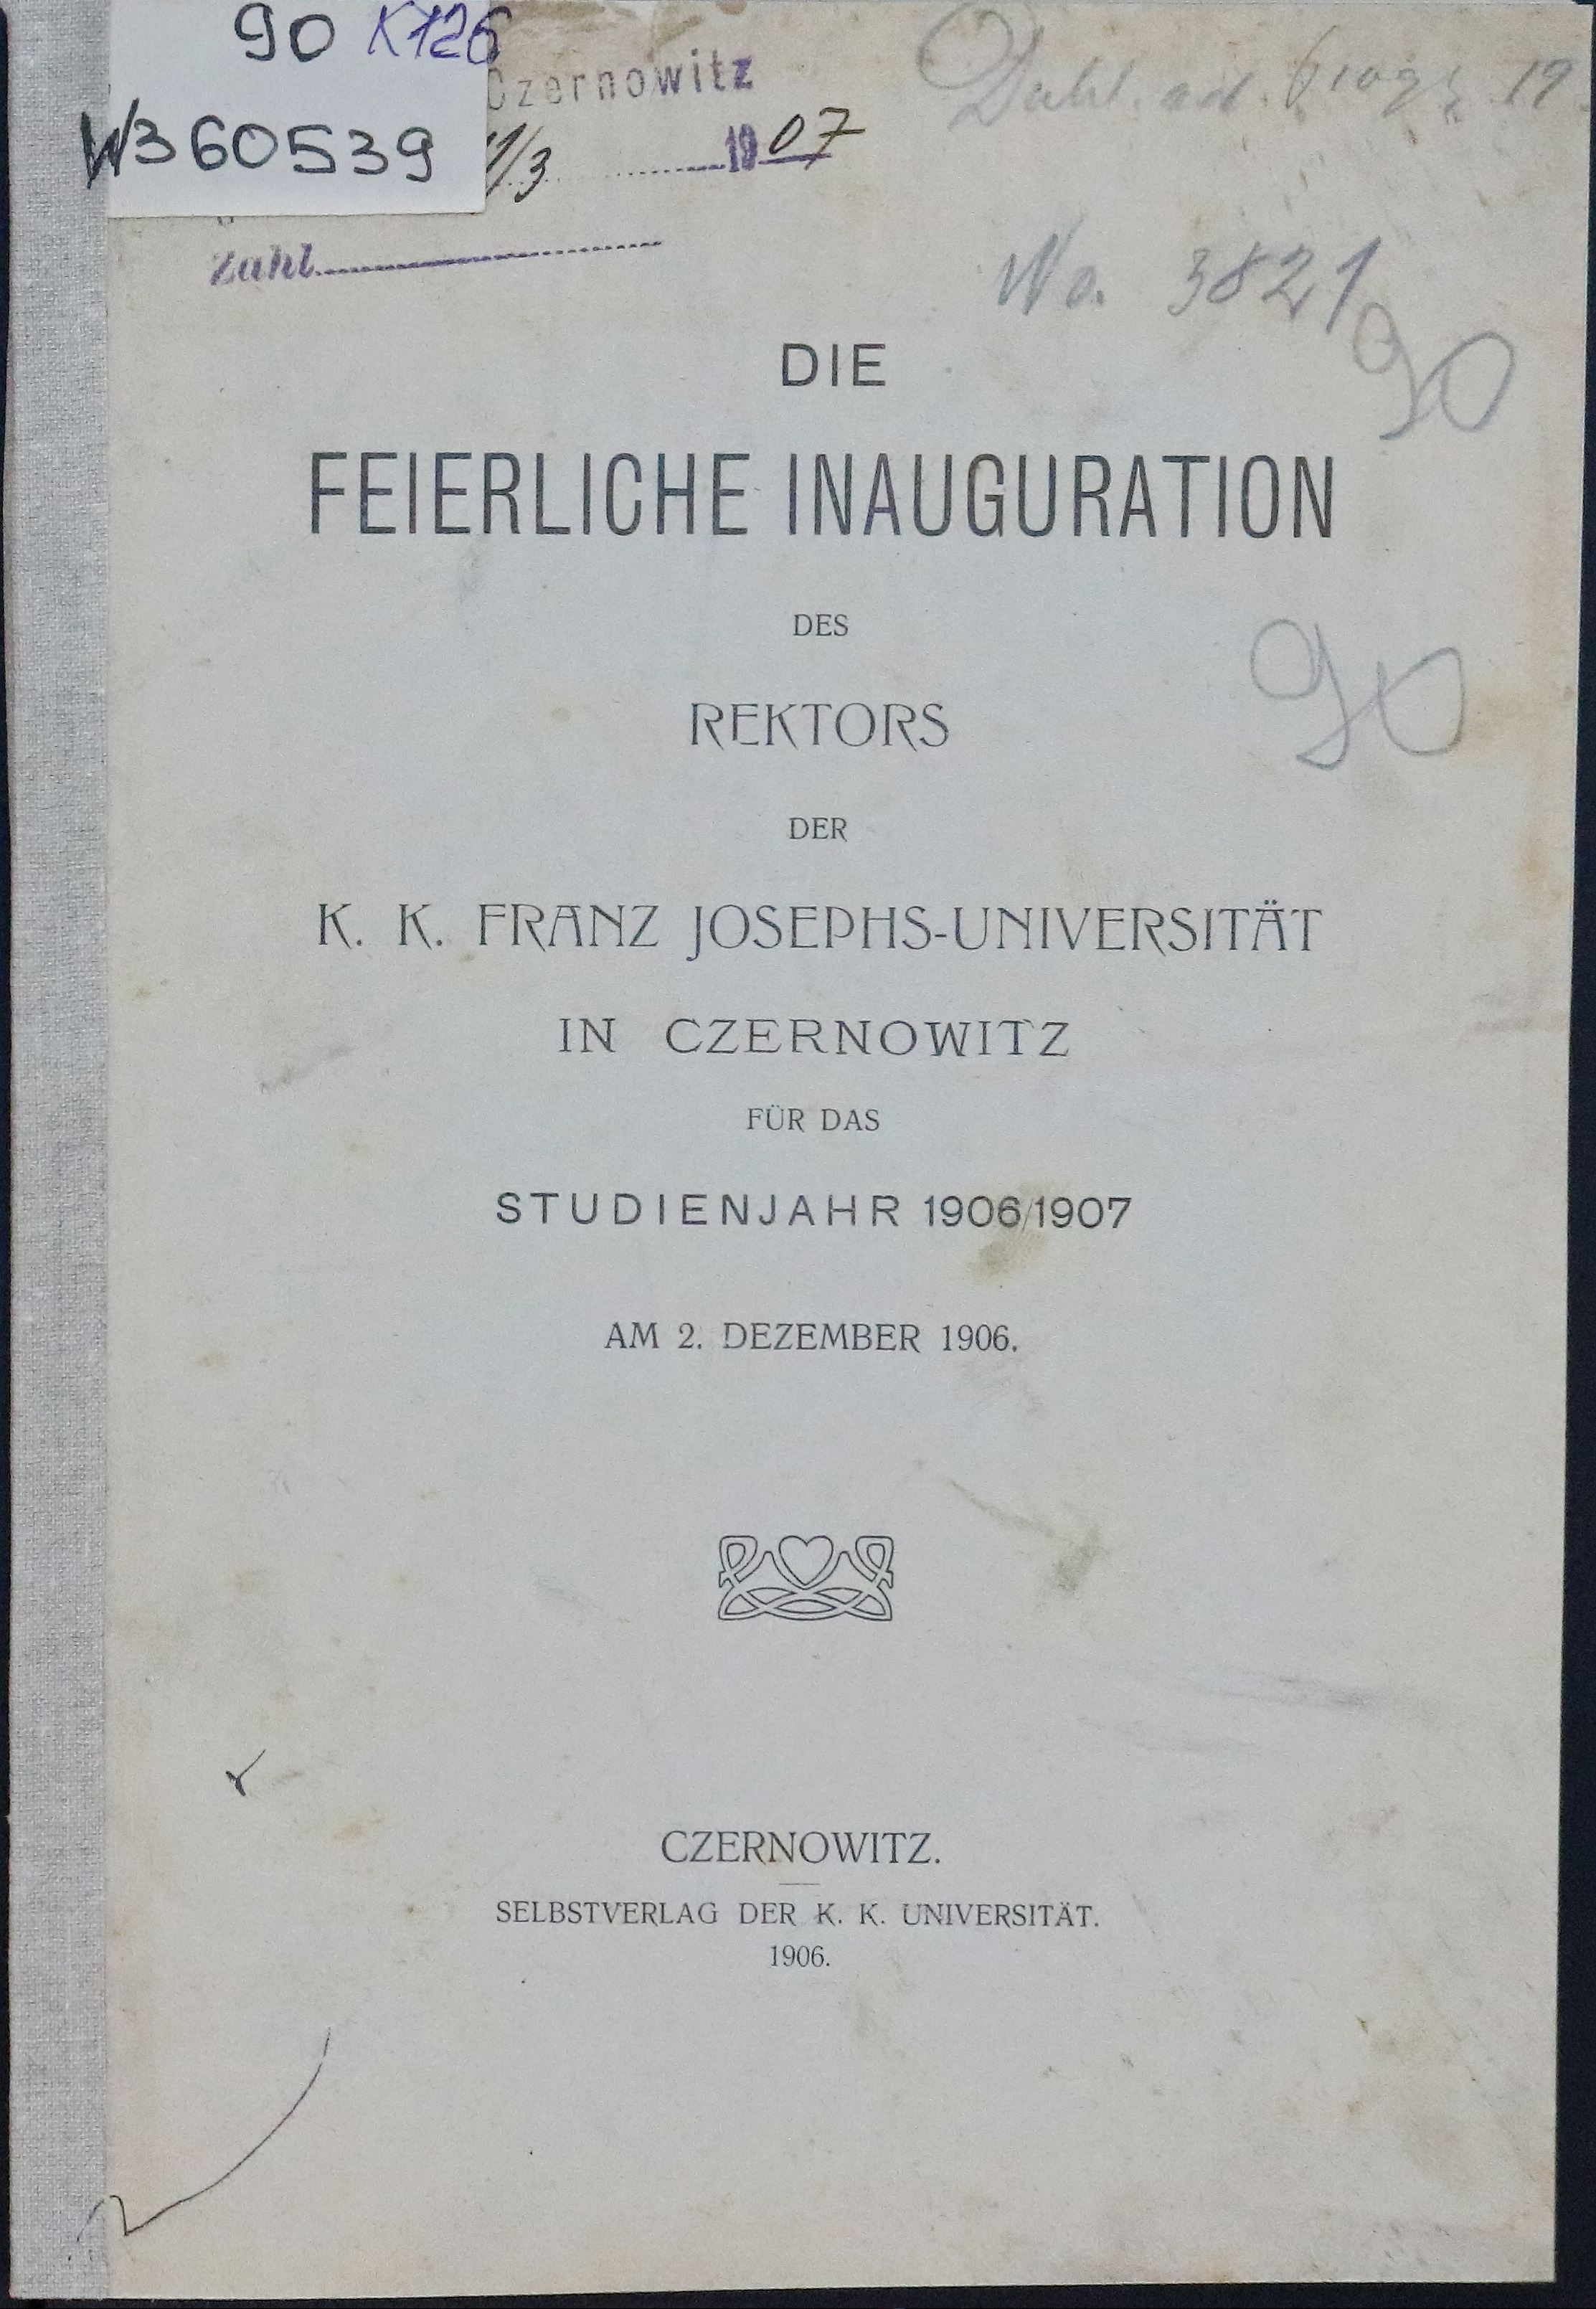 Die feierliche Inauguration des Rektors der k.k. Franz Josephs-Universität in Czernowitz für das Studienjahr 1906/1907.